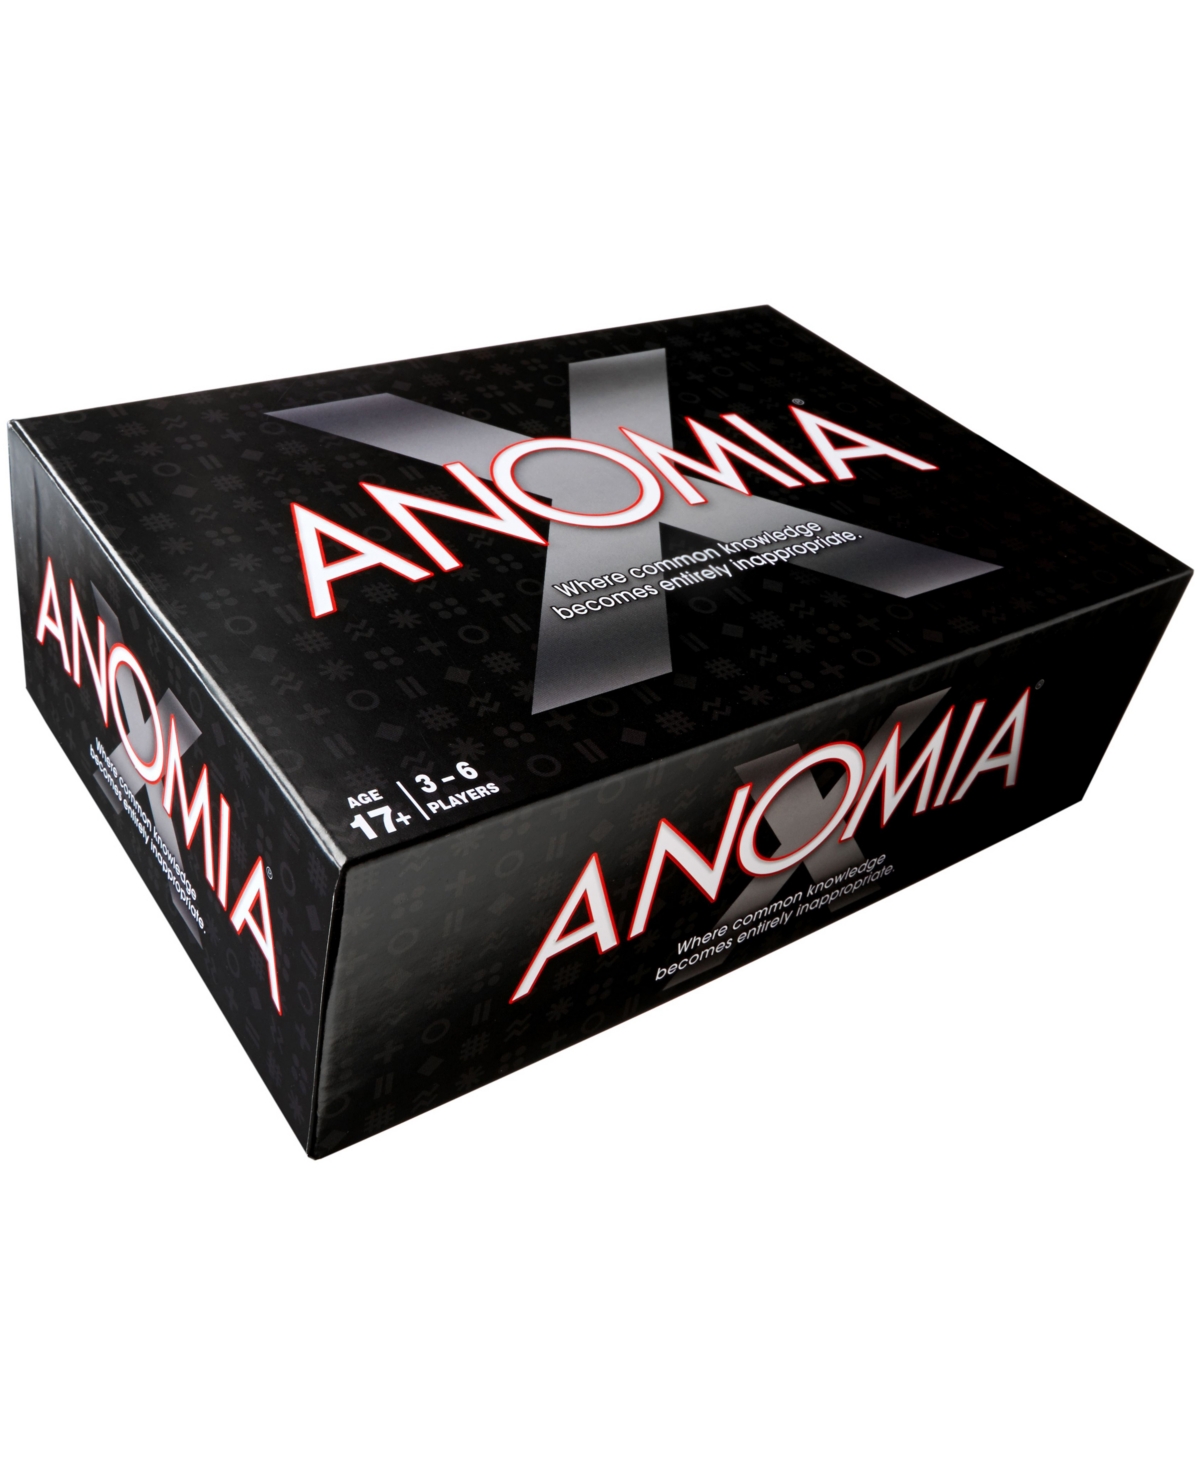 Anomia Press Anomia X Card Game In Multi